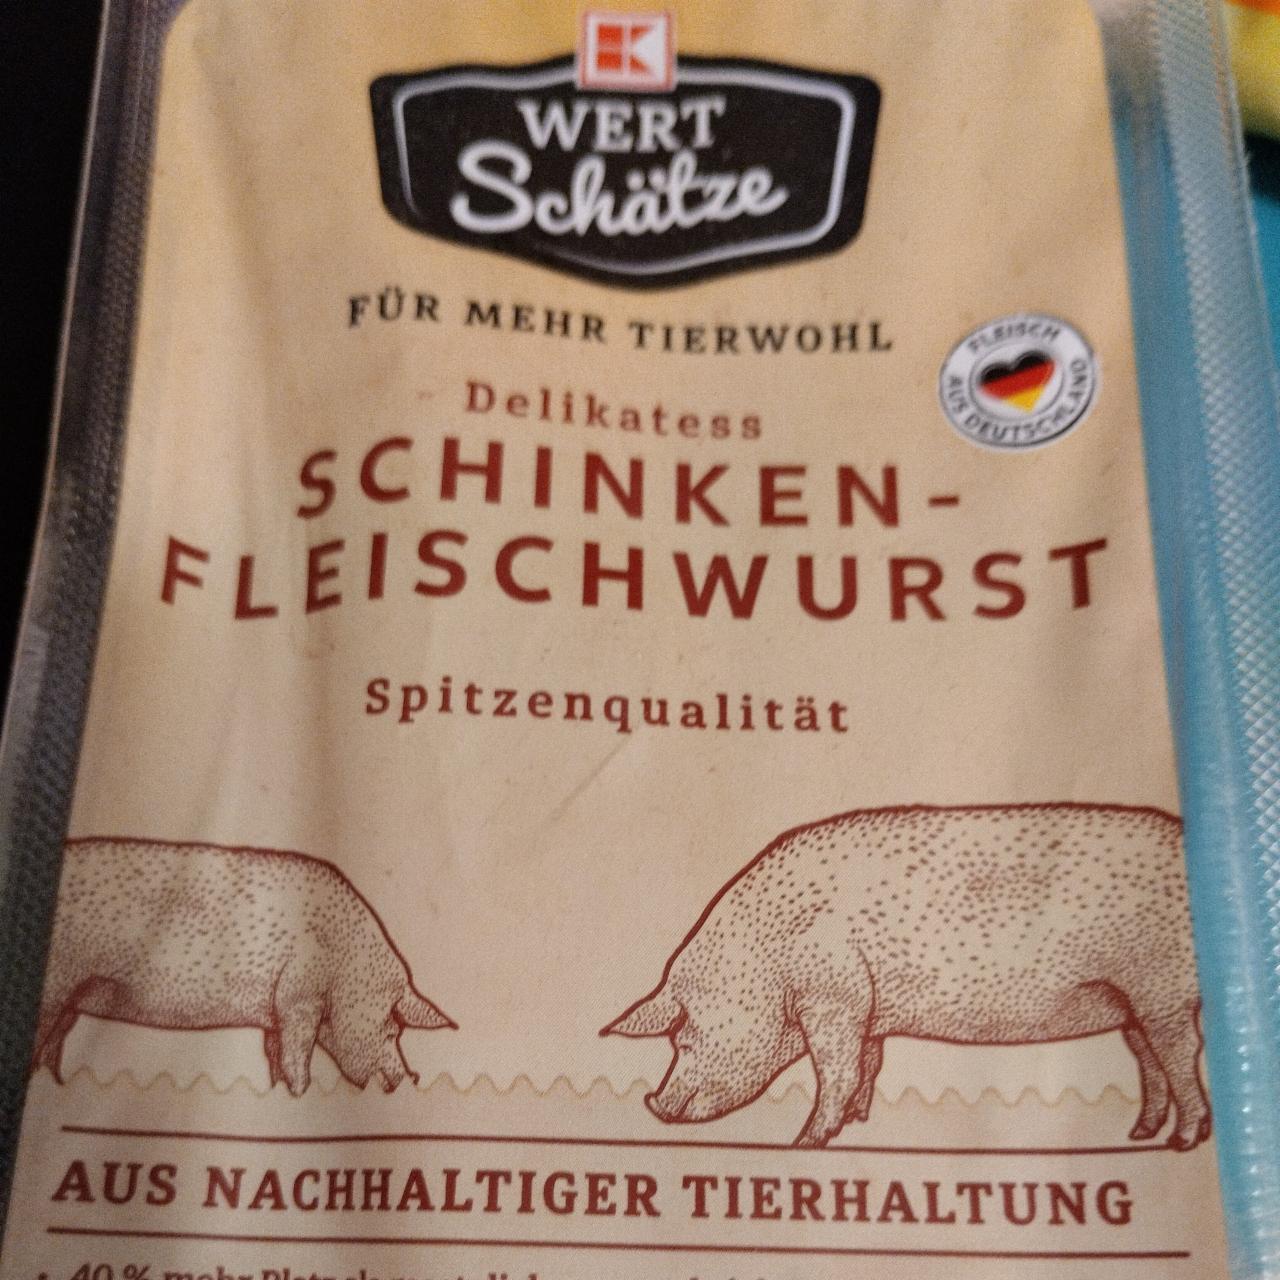 Fotografie - schinken fleischwurst K Wert Schätze